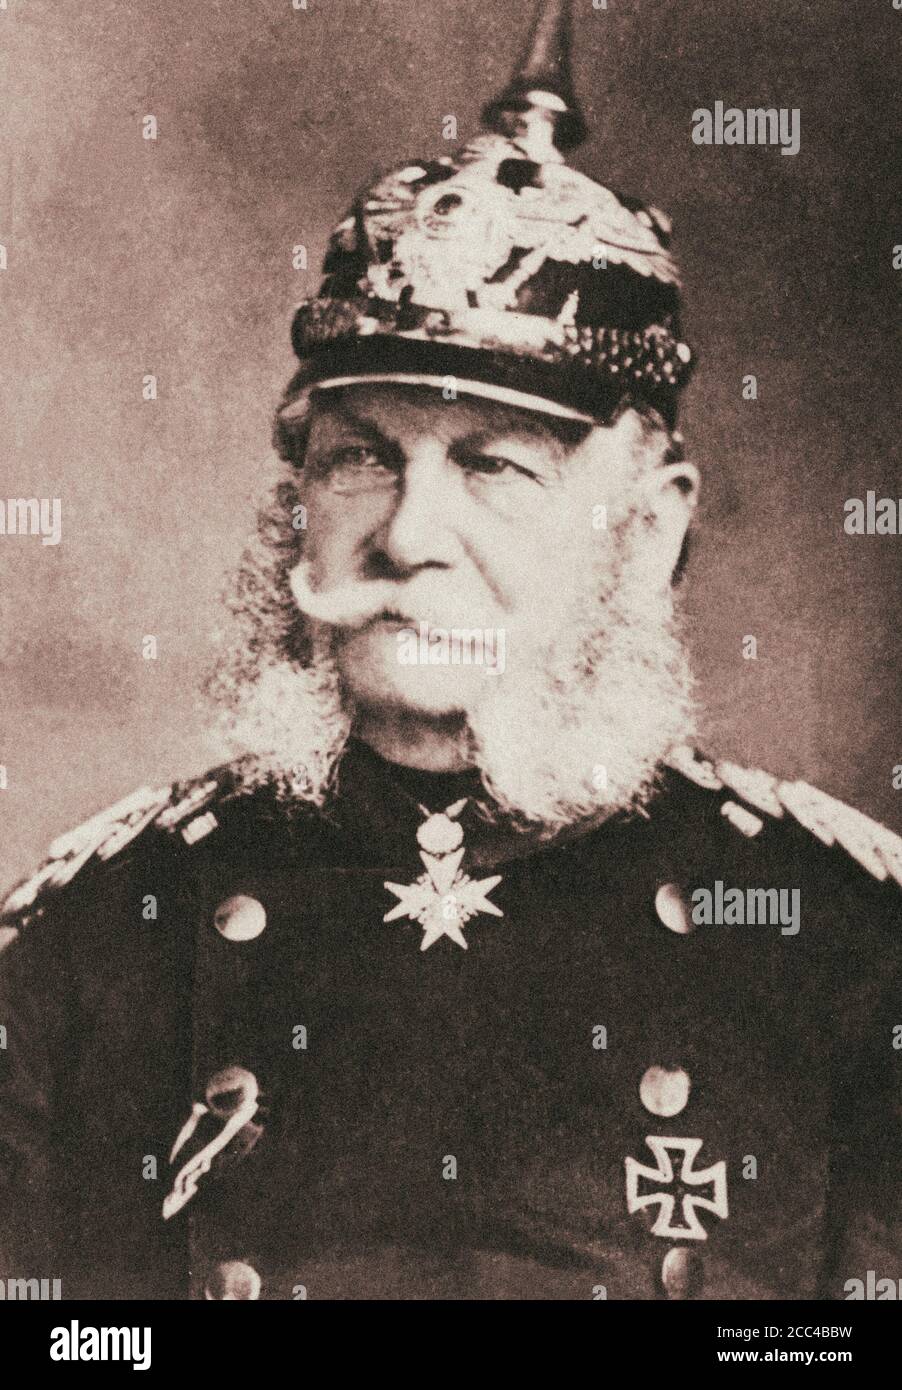 William I ou Wilhelm I (1797 – 1888) De la Maison de Hohenzollern était roi de Prusse 2 janvier 1861 et le premier empereur allemand de 18 Janvier Banque D'Images